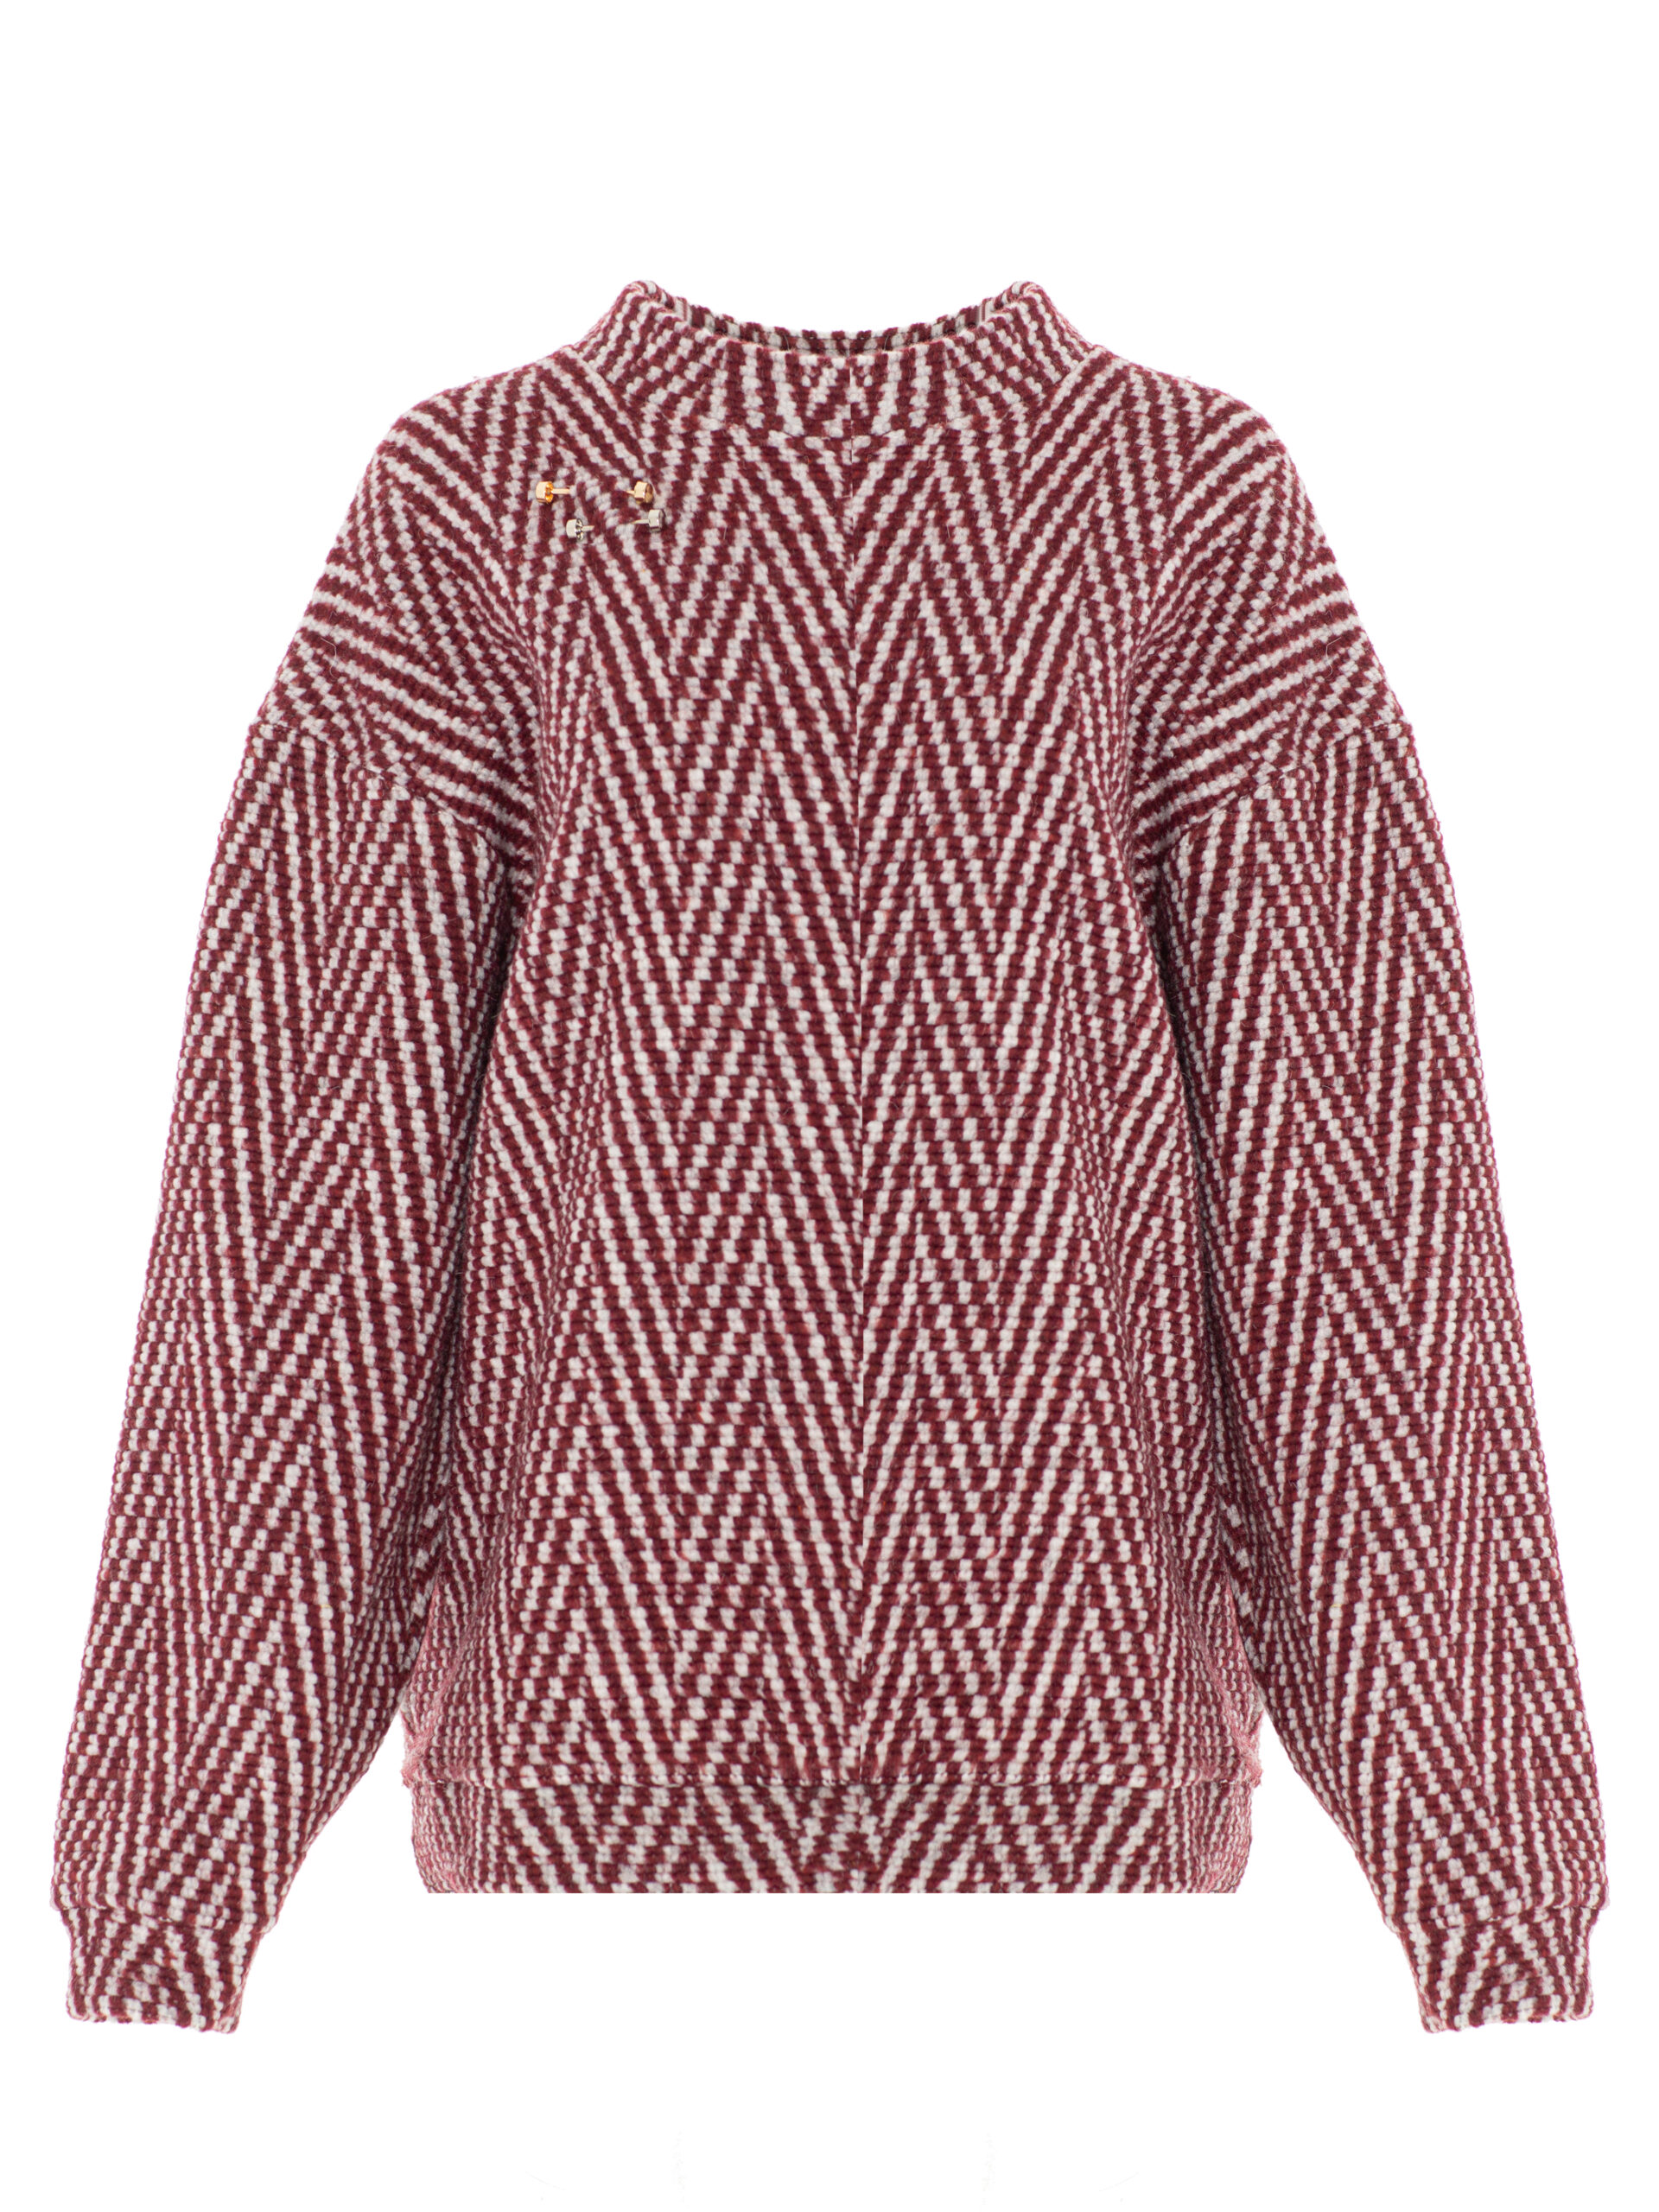 Sweater KURT burgundy